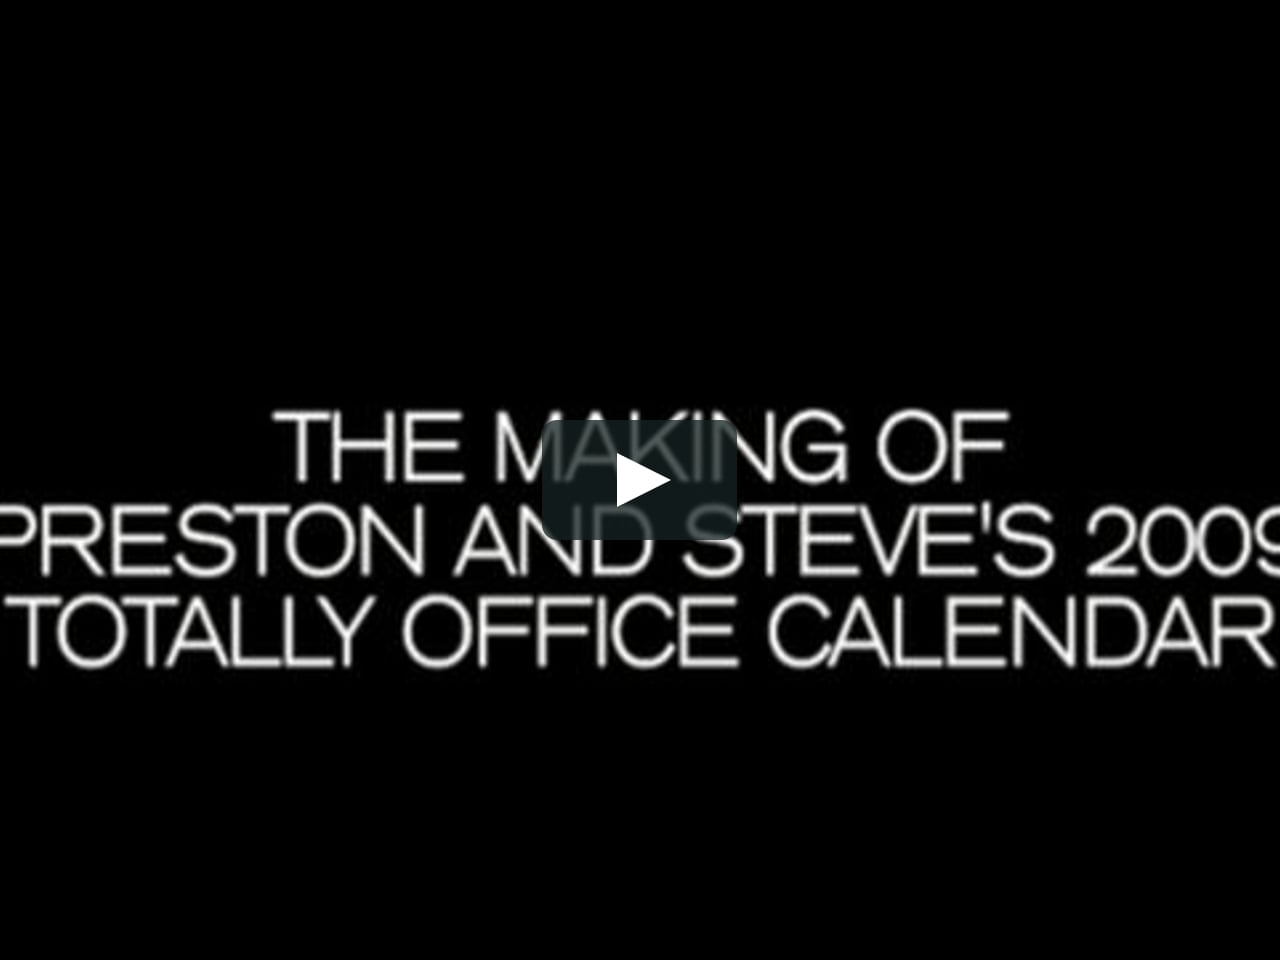 Preston & Steve's 2009 Totally Office Calendar "Making of" DVD trailer